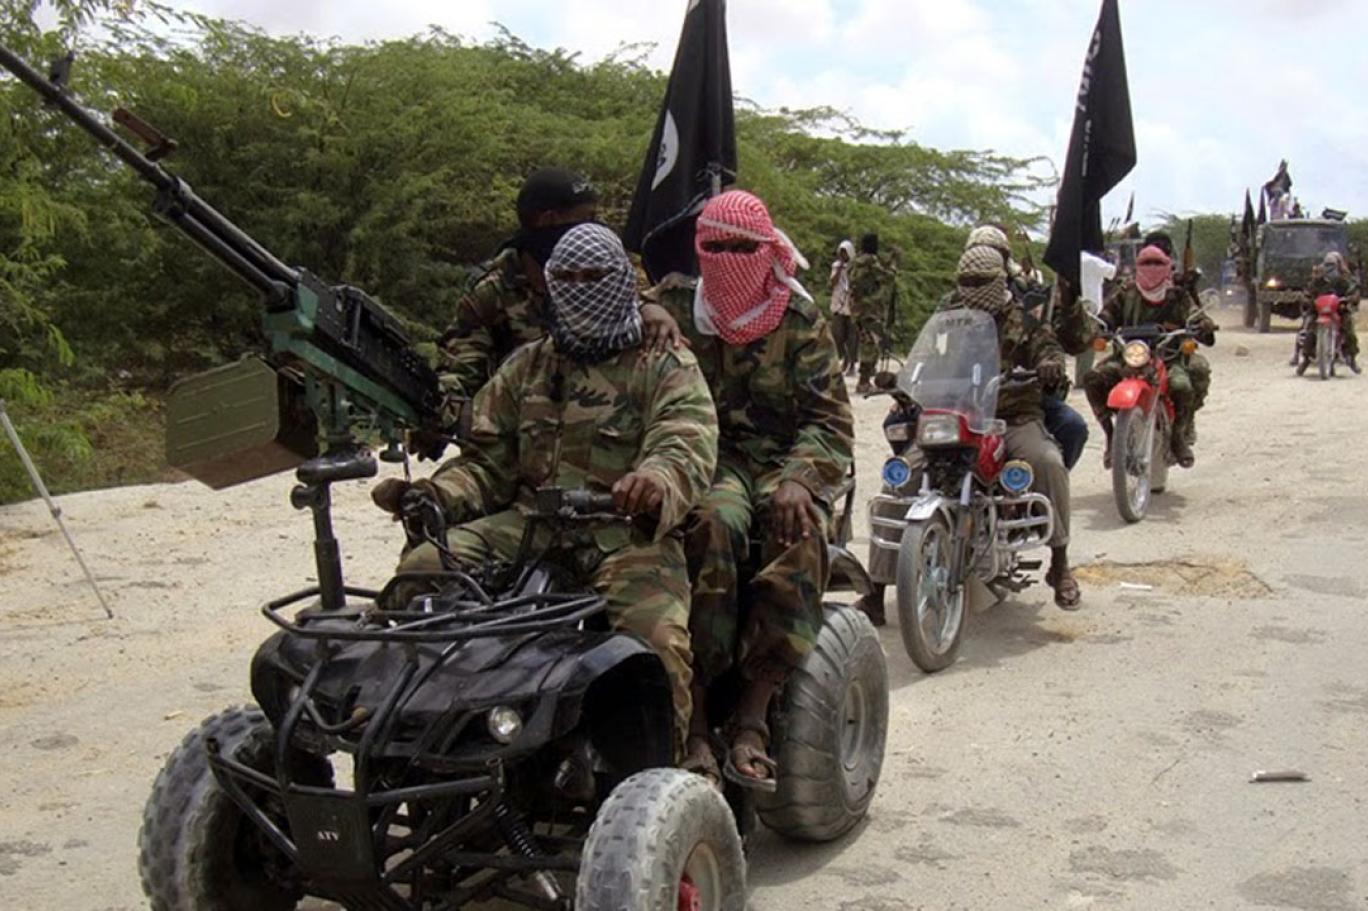 لماذا يكثف تنظيم “داعش” هجماته في النيجر؟